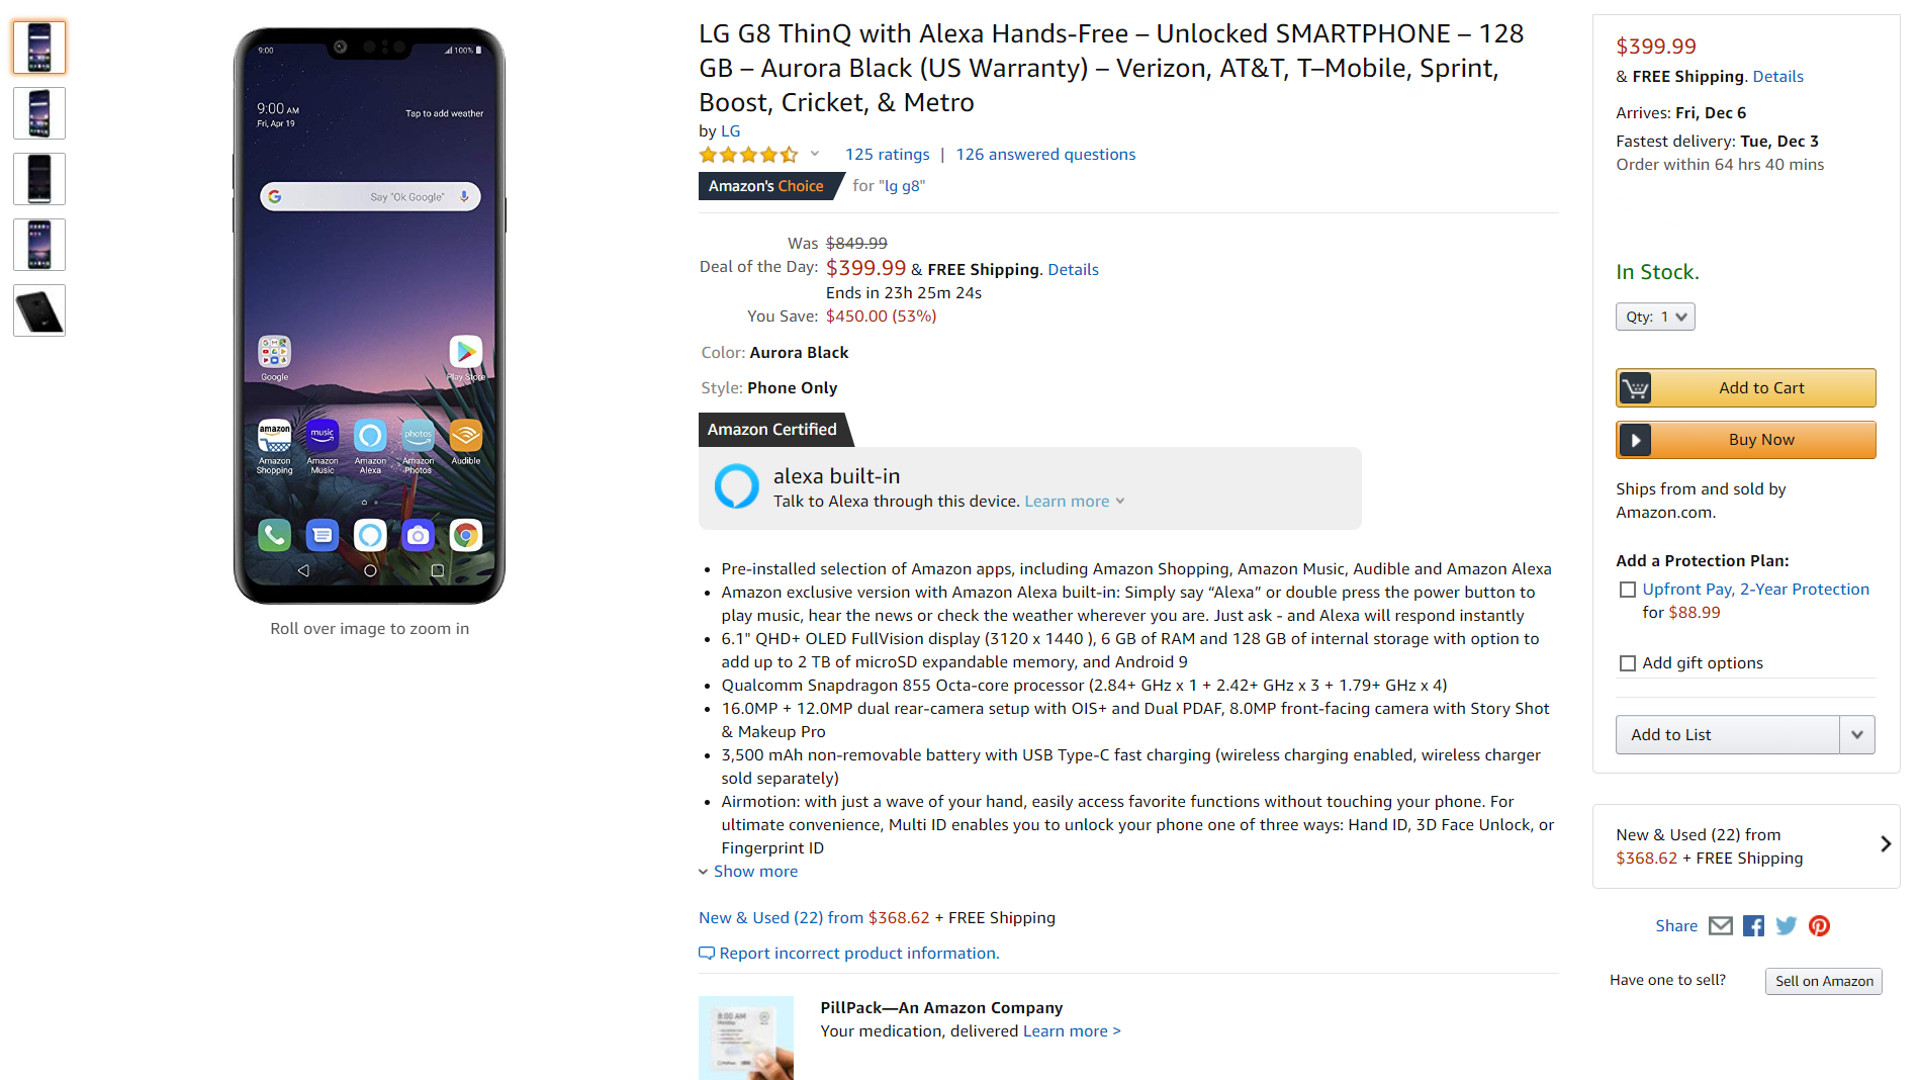 The LG G8 ThinQ via Amazon.